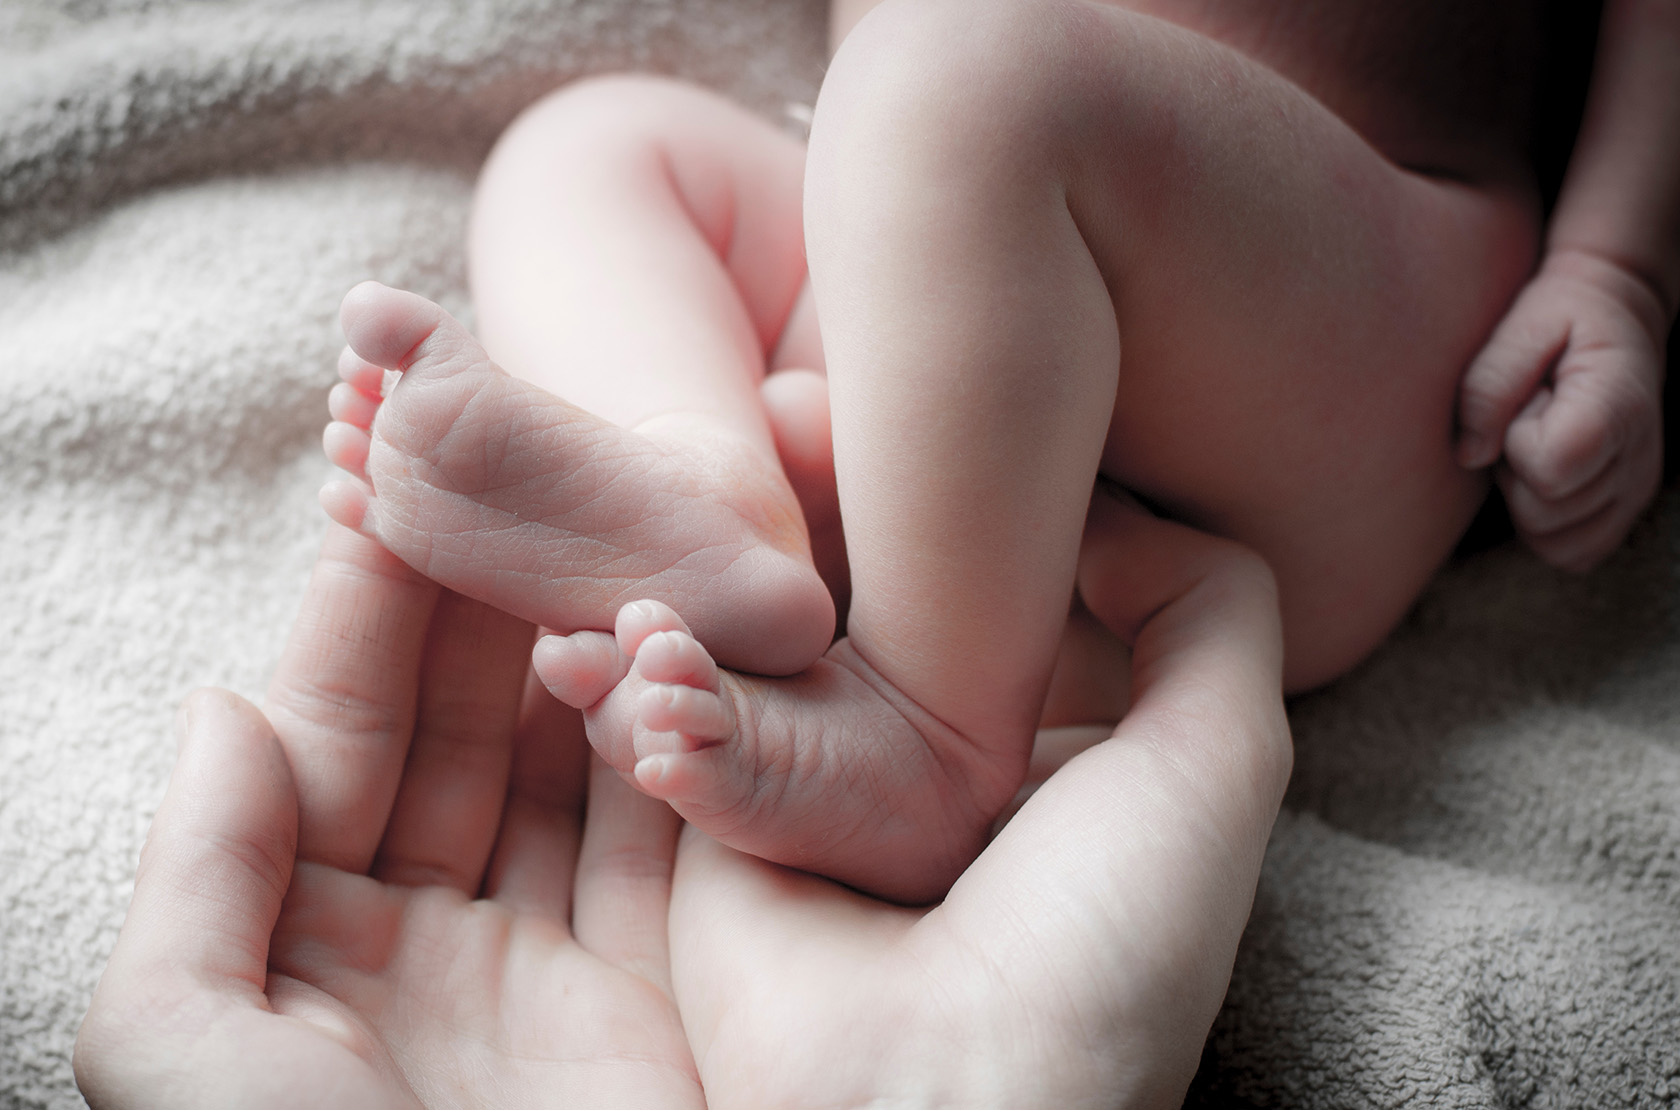 Малыш в утробе: изображения без лицензионных платежей